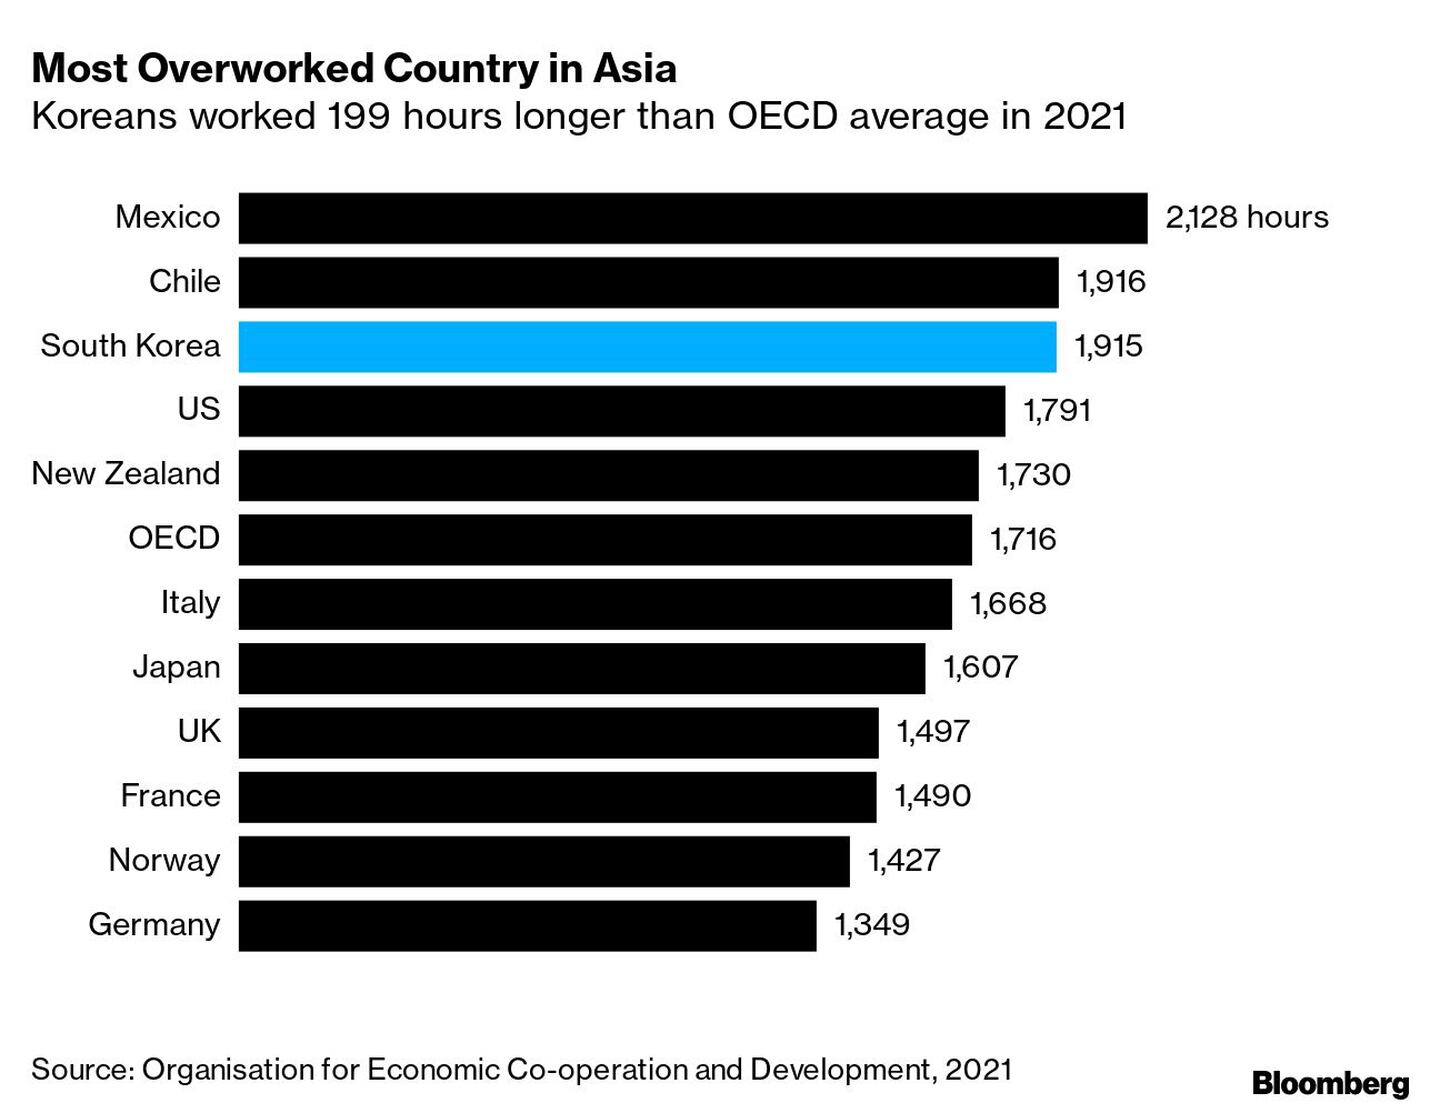 Los coreanos trabajaron 199 horas más que la media de la OCDE en 2021dfd